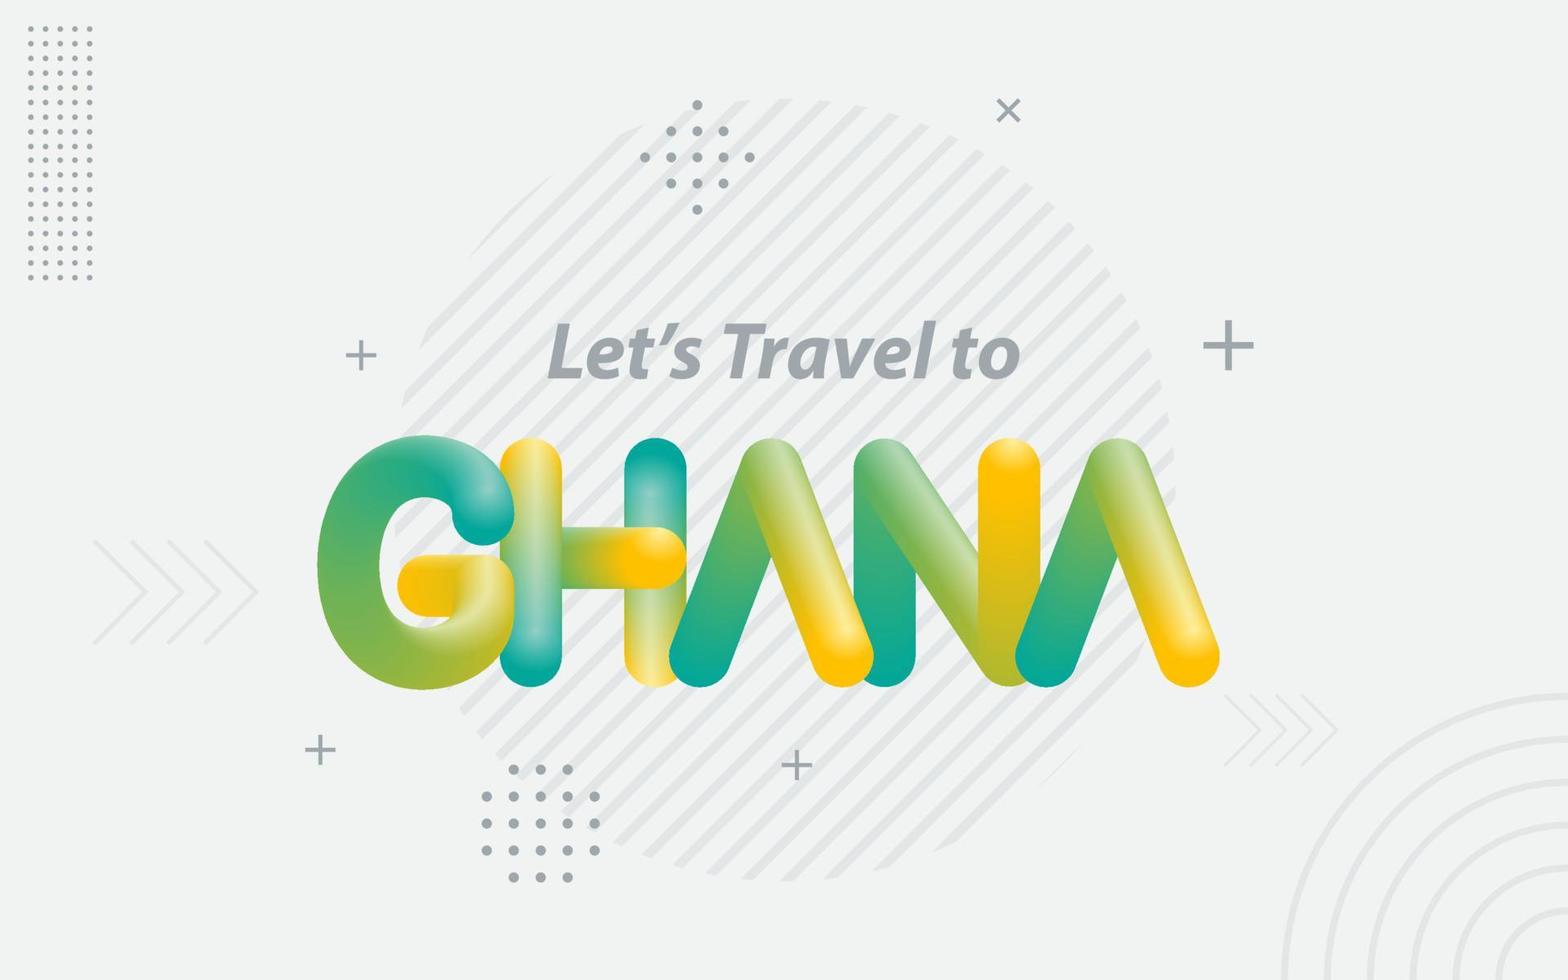 laten we reizen naar Ghana. creatief typografie met 3d mengsel effect vector